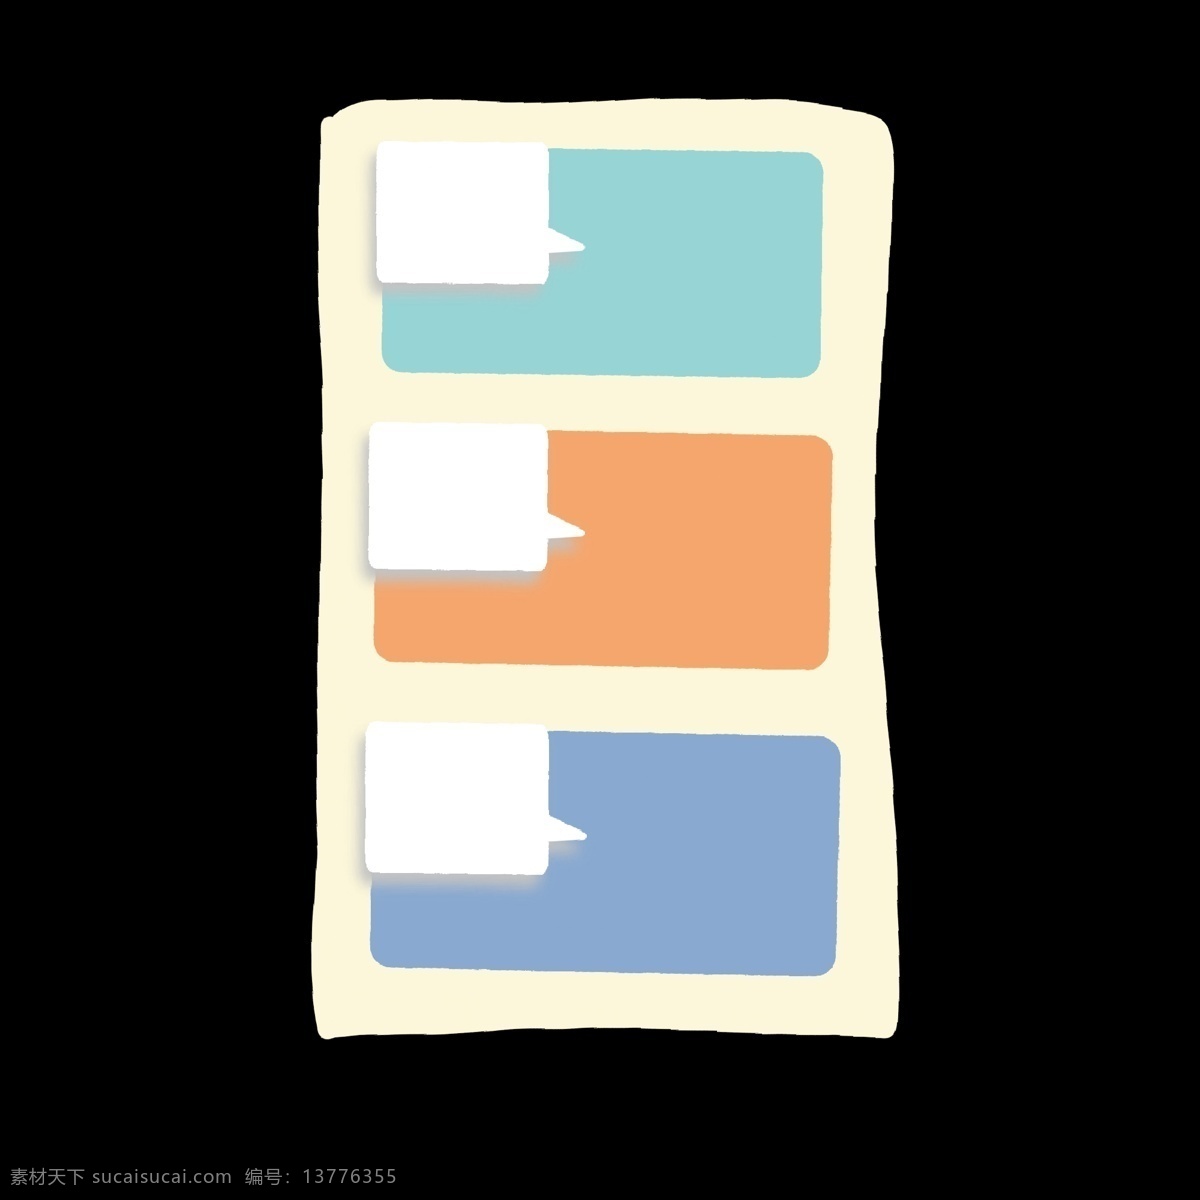 长方形 对话框 马卡 龙 色 分类 图标 马卡龙色 分类表 分解 分化 分开 ppt专用 卡通 简约 简洁 简单 五颜六色